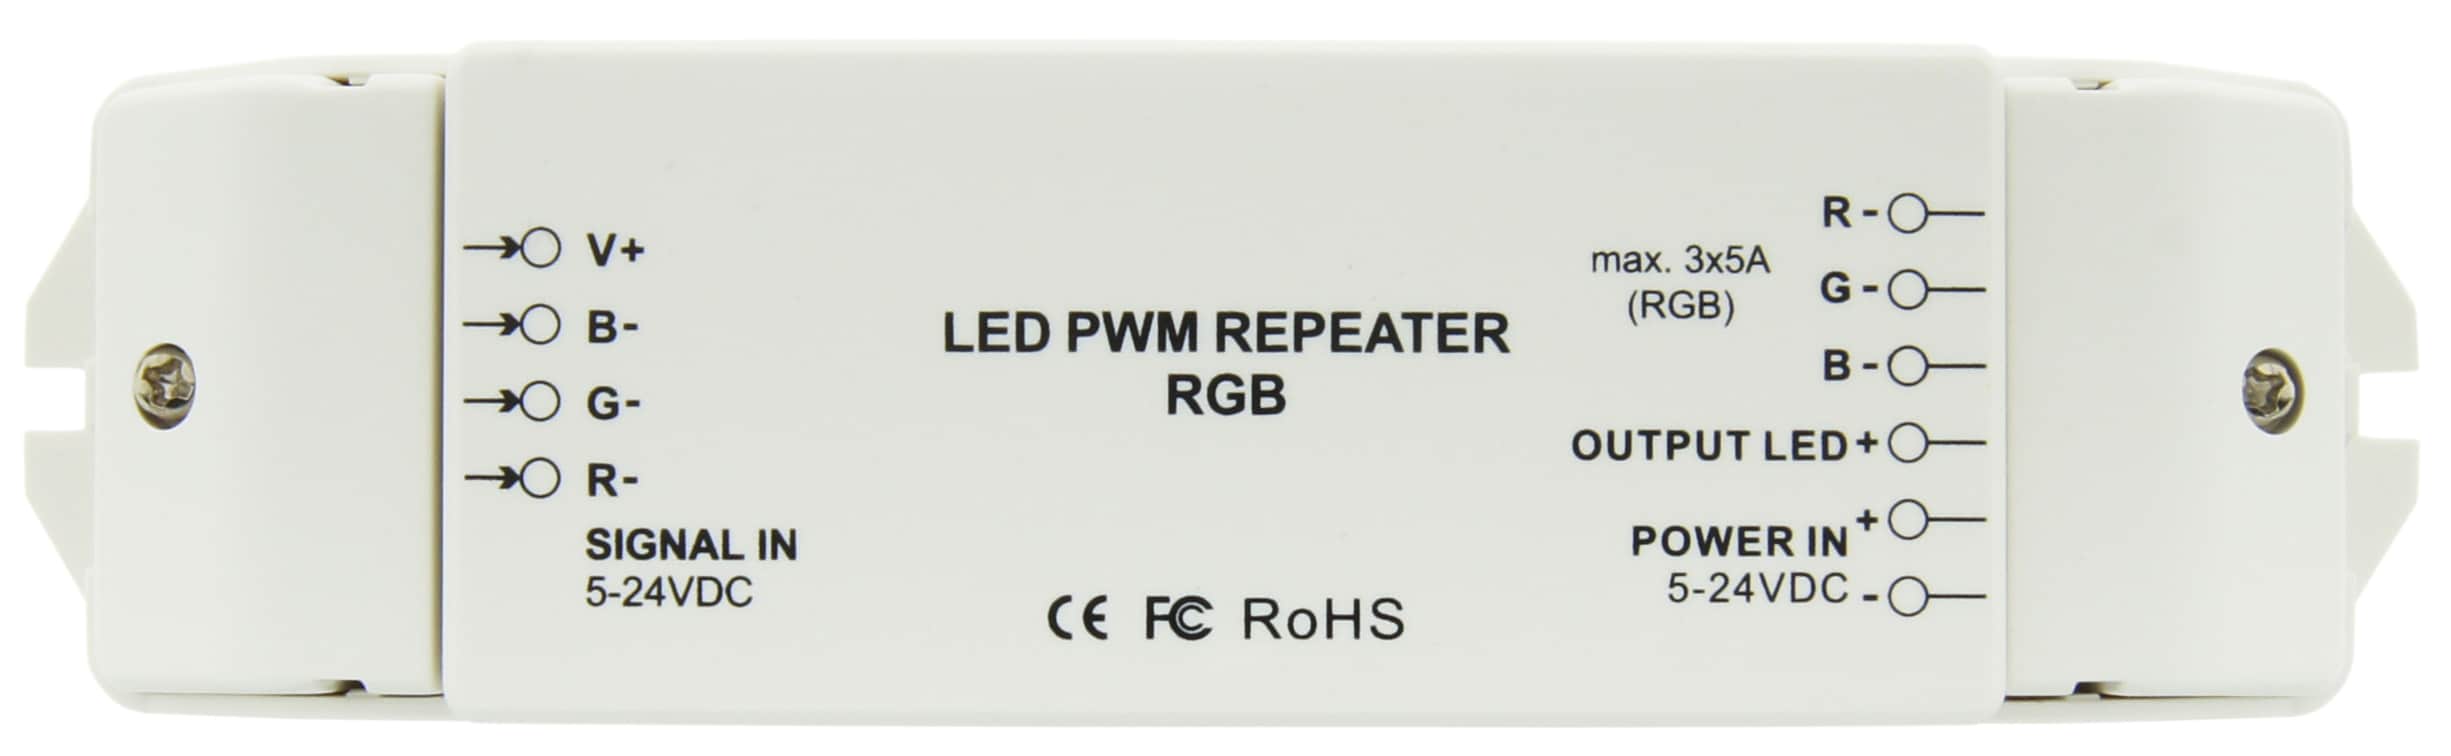 https://autled.com/daten/foto/Produktfoto_LED-PWM-Repeater-RGB_1_v1.jpg